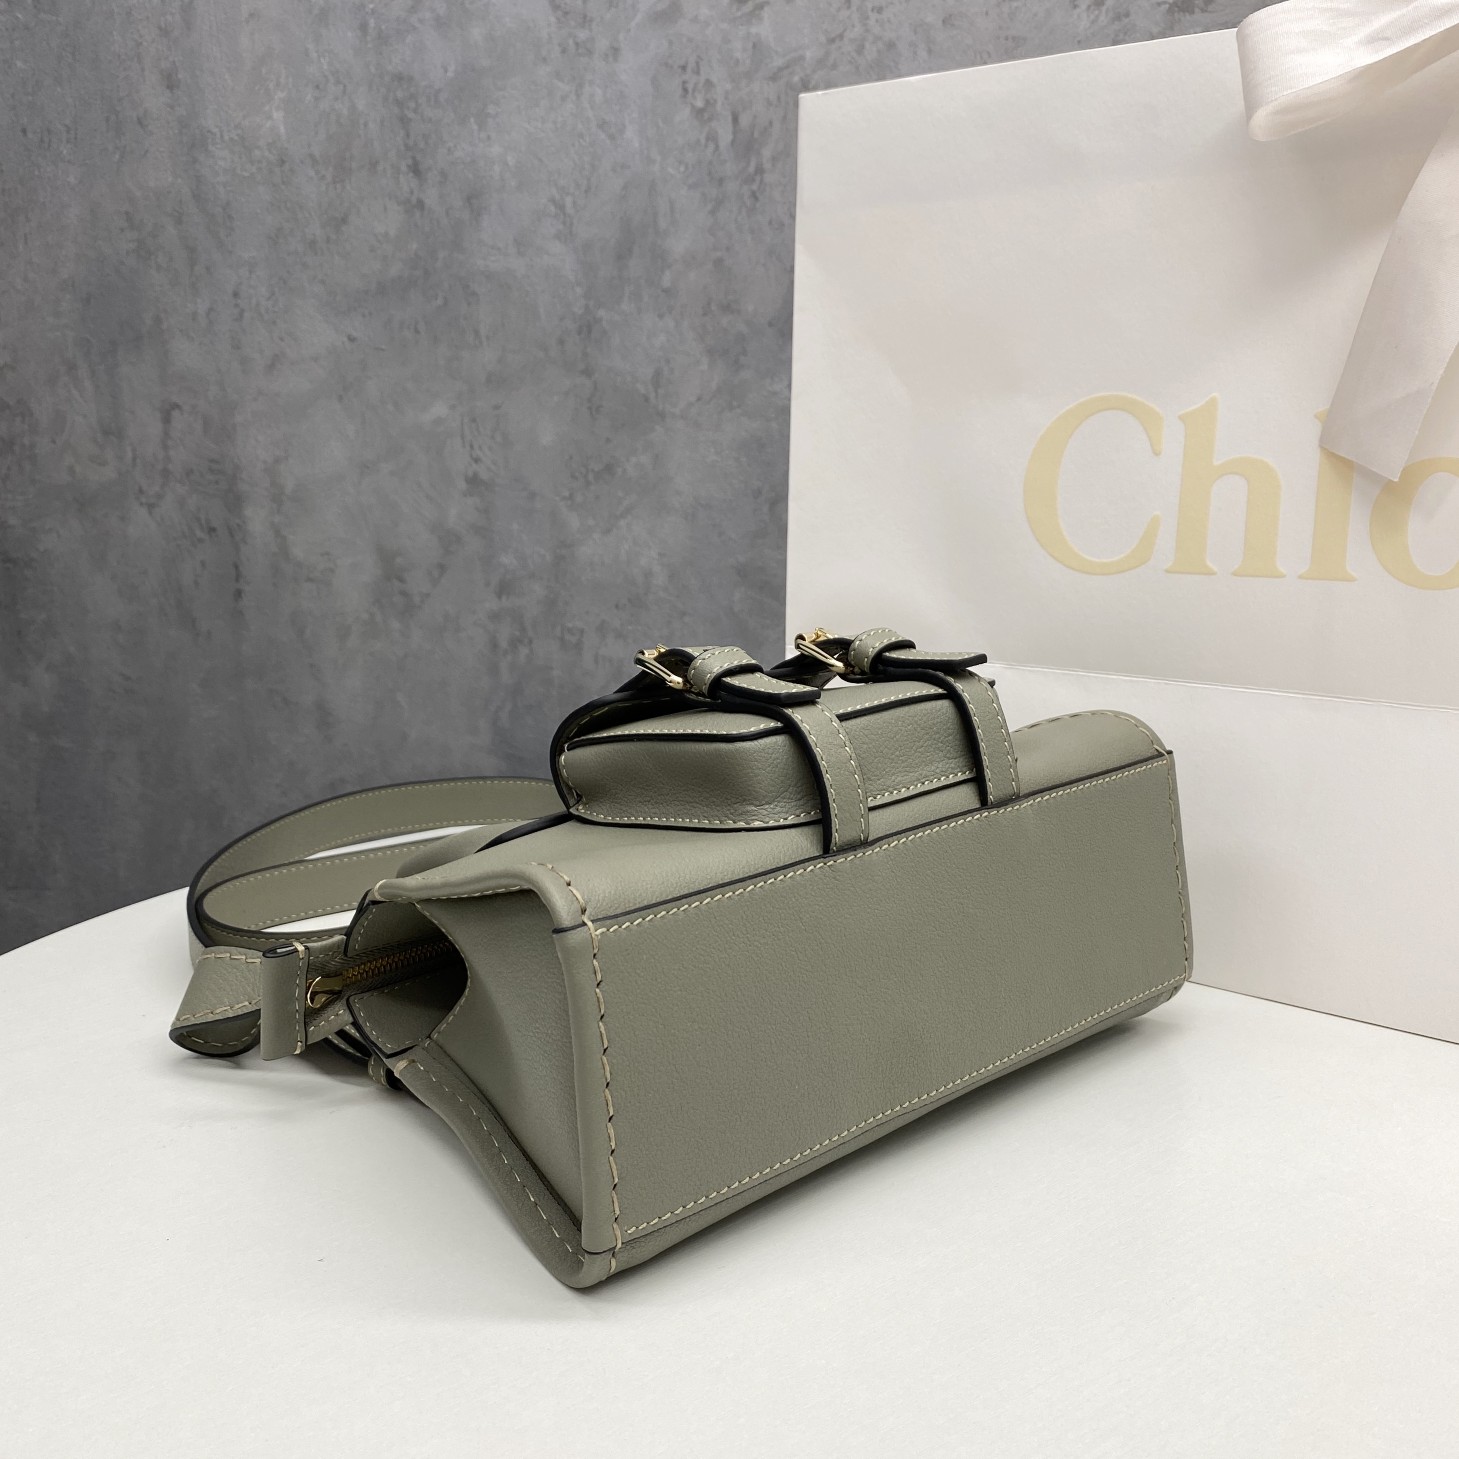 【P1500】Chloe包包批发 克洛依秋冬新款27455灰色原版皮料手提斜挎包